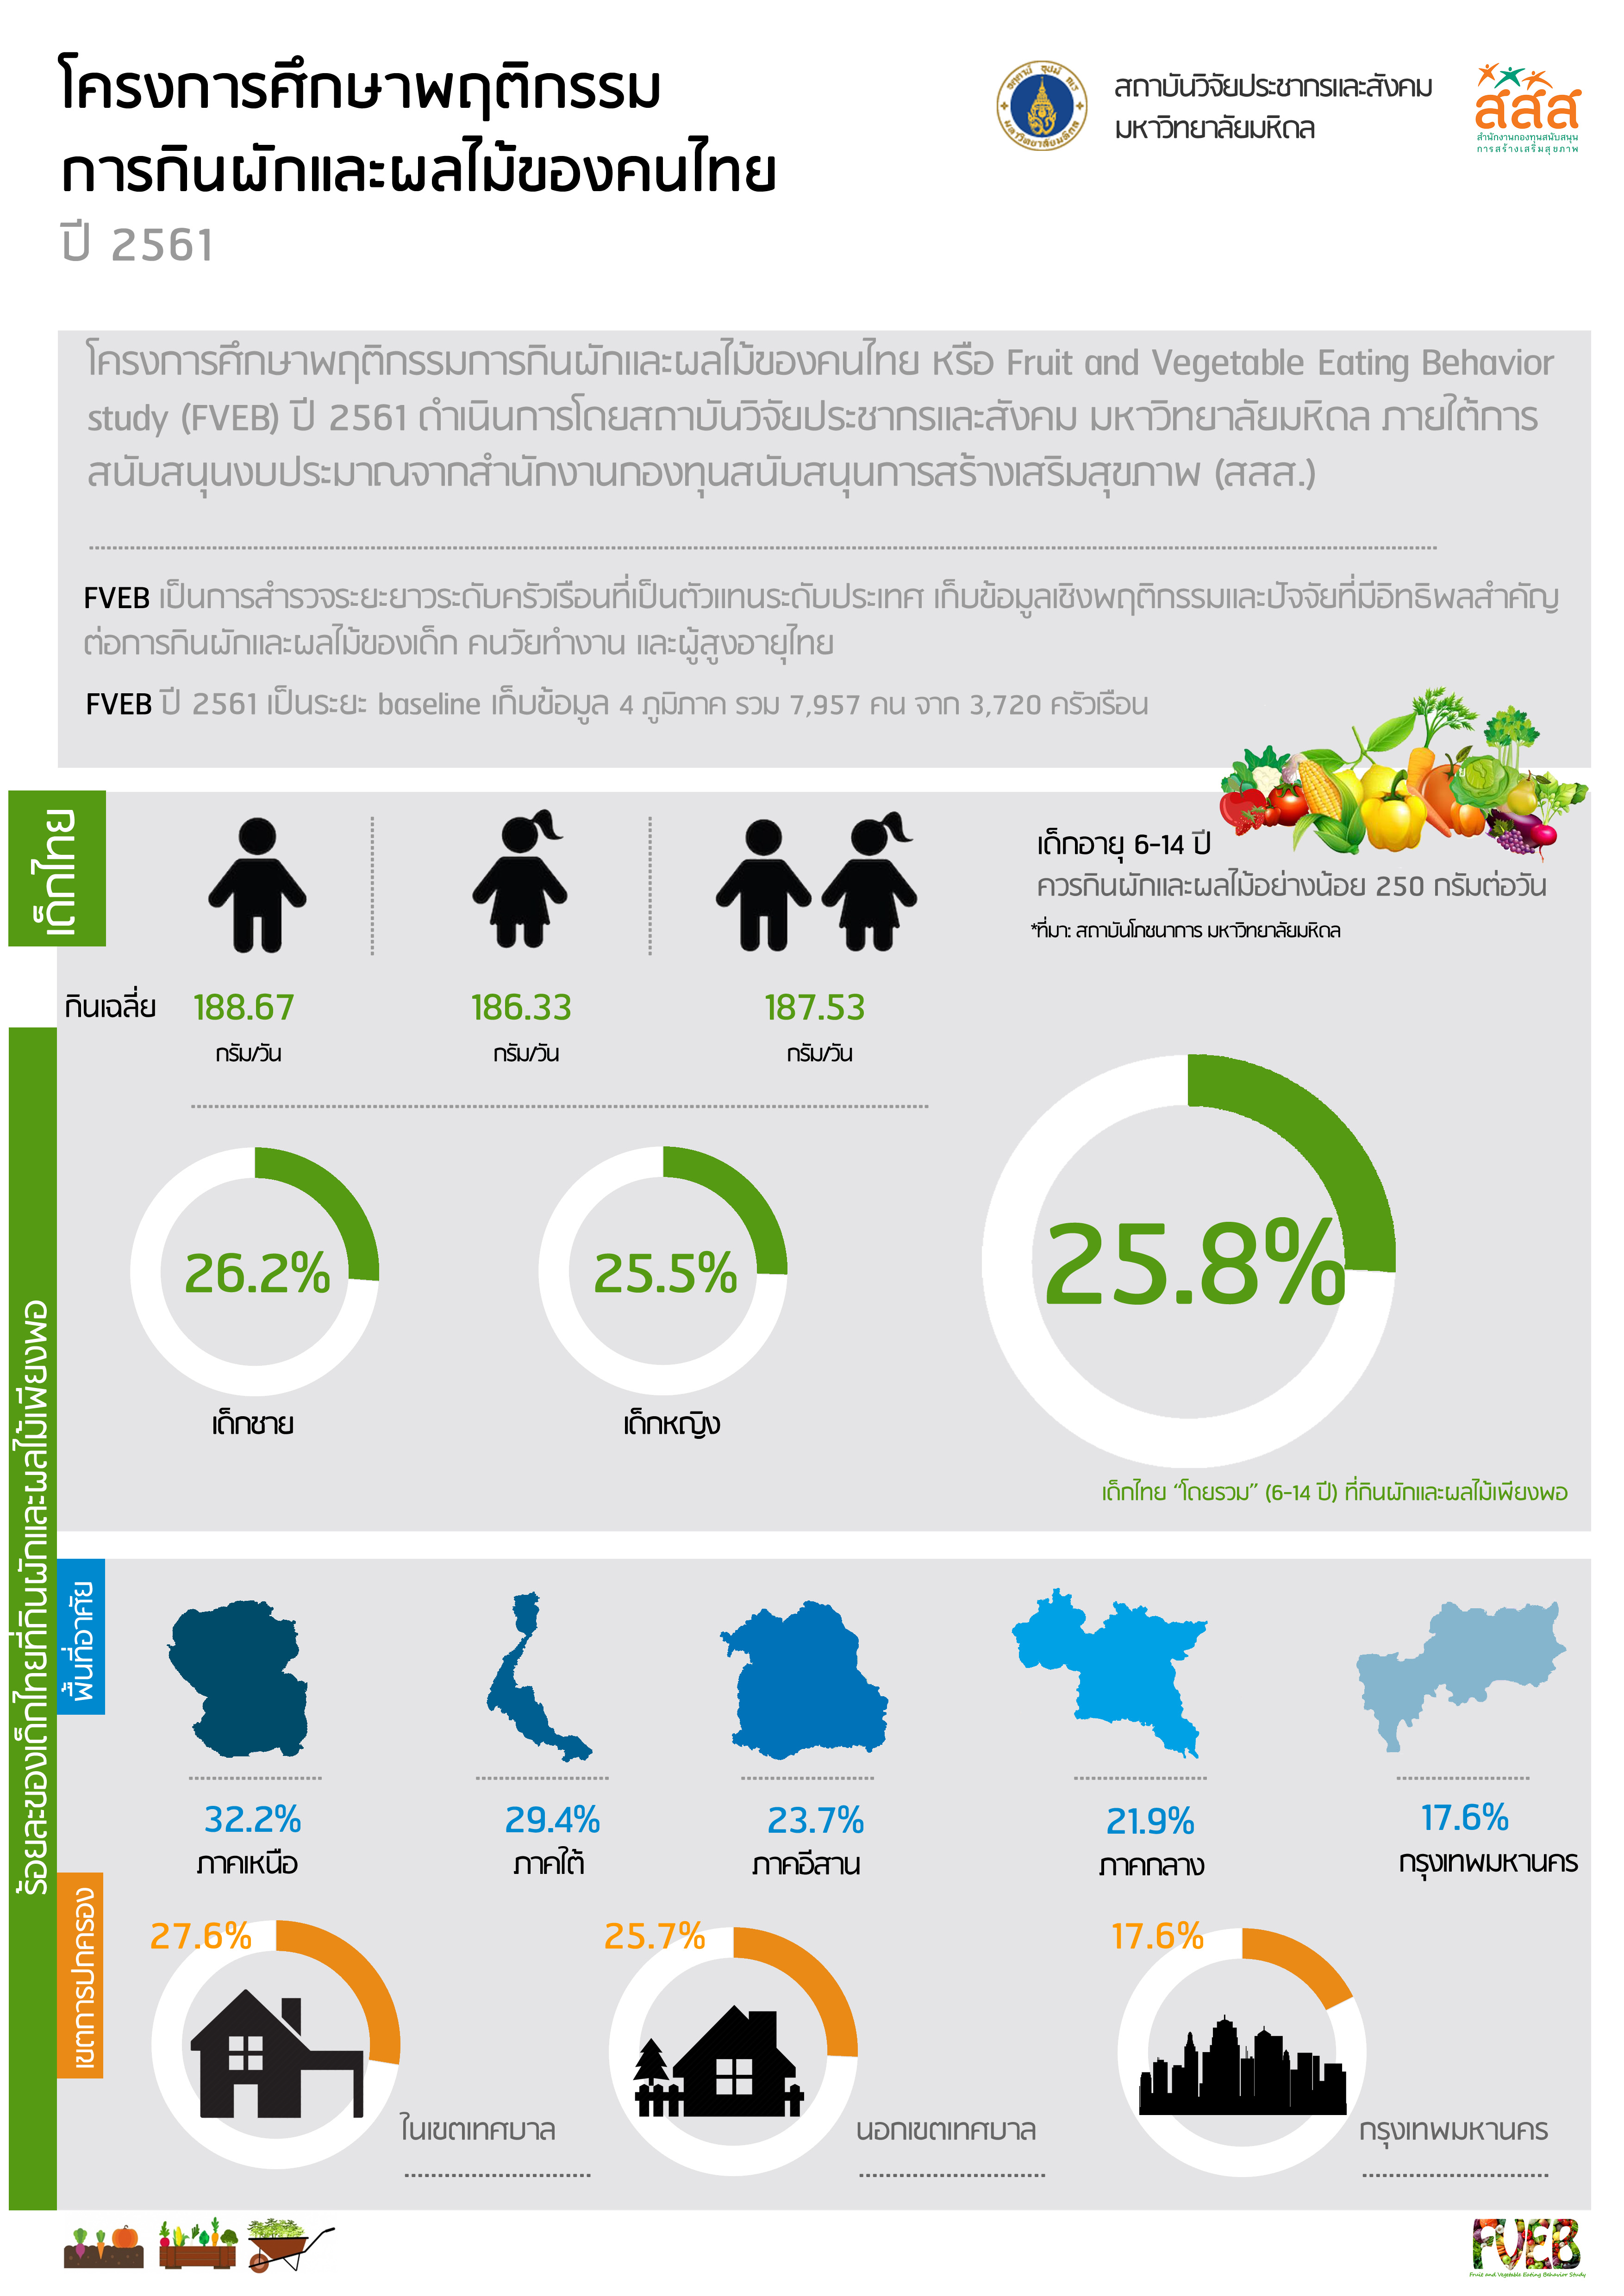 โครงการสำรวจติดตามพฤติกรรมการกินผักและผลไม้ของคนไทย